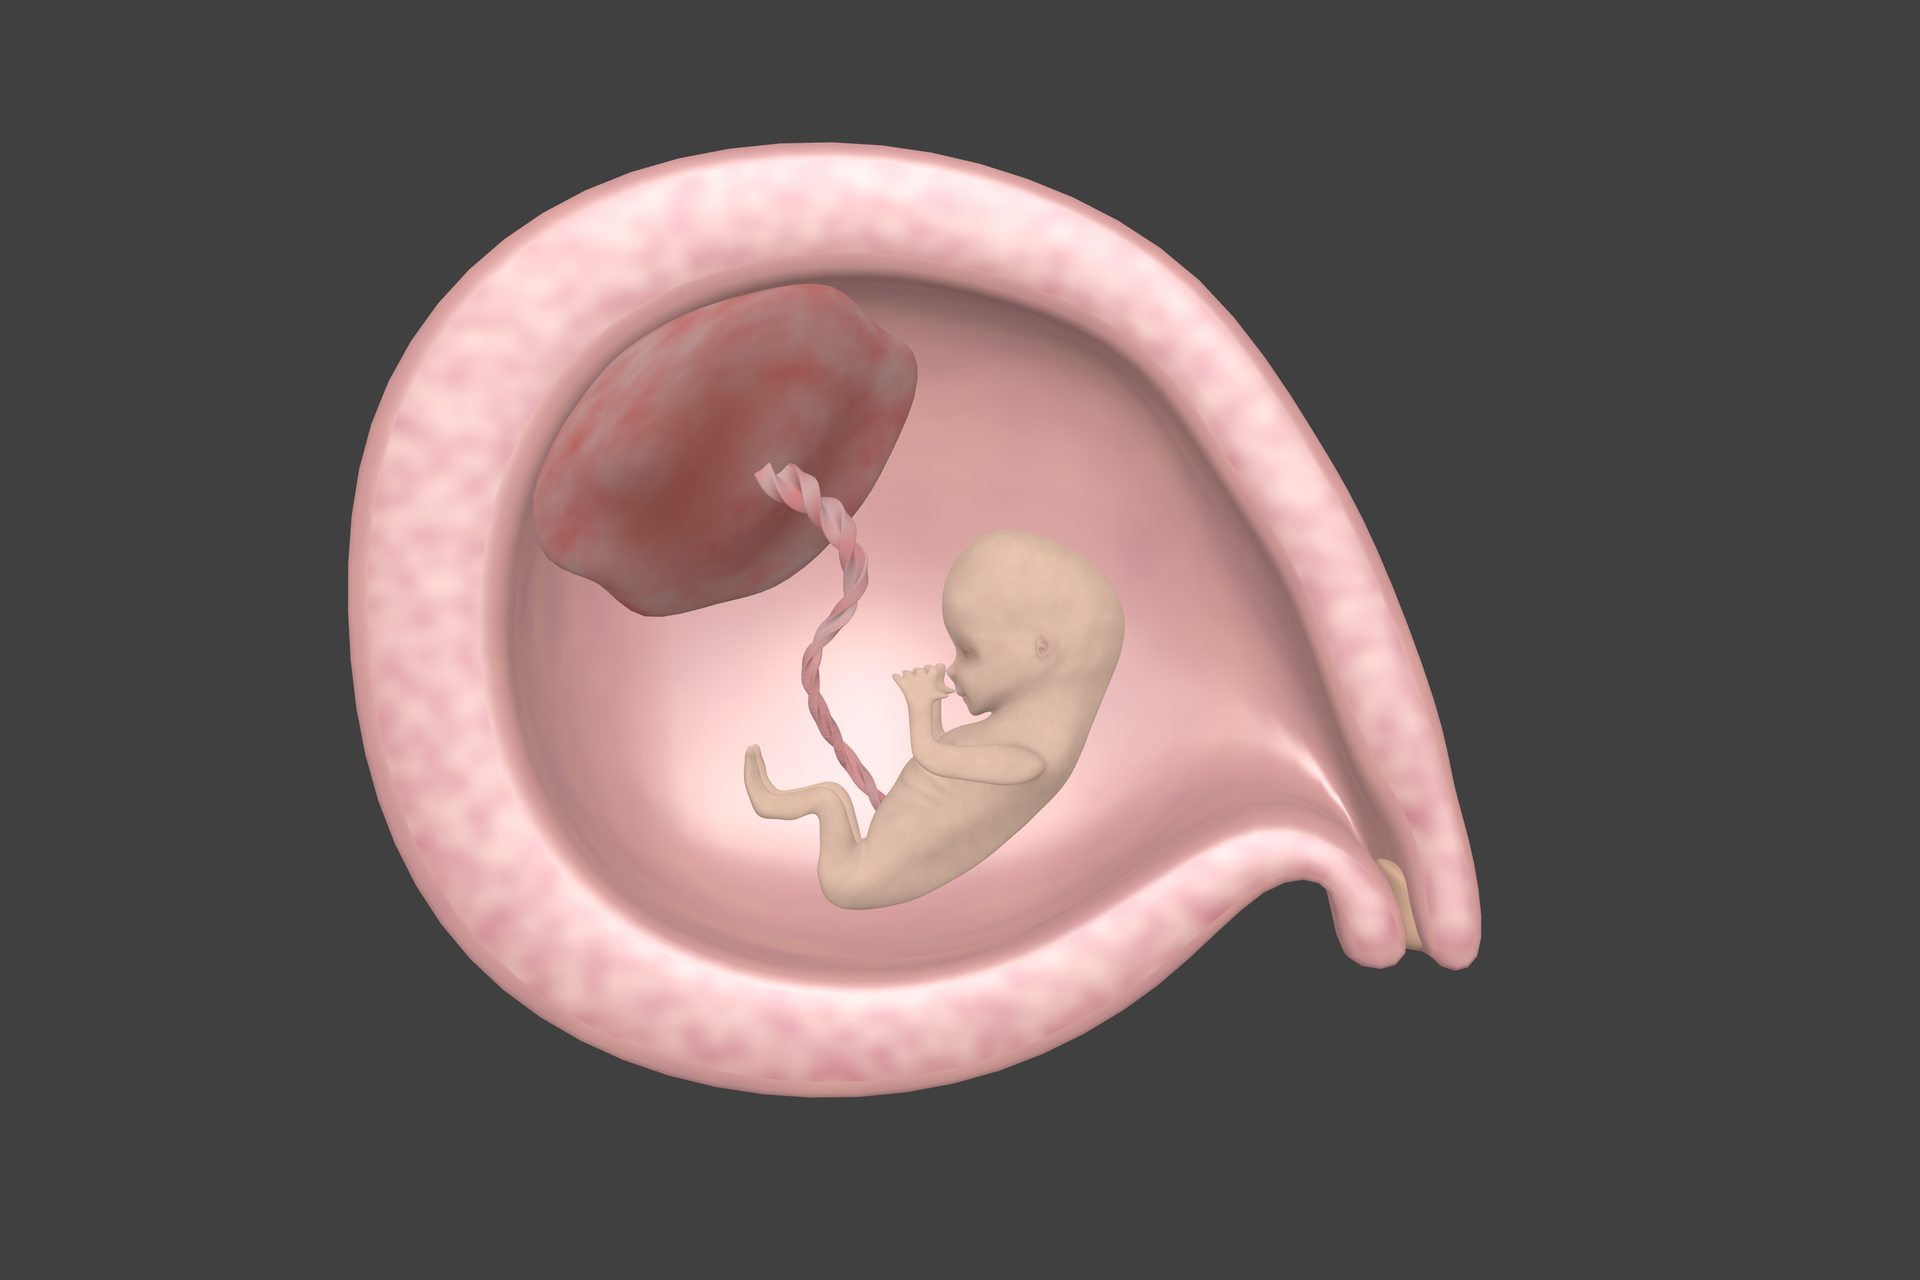 Ilustracja przedstawia płód w macicy w trzecim miesiącu ciąży. Łożysko widoczne jako ciemnoczerwona bryła po lewej stronie. Płód jest niemal wielkości łożyska. Kształtuje się twarz, zaczyna kostnieć szkielet i pracuje układ odpornościowy. Płód ma wyraźnie kończyny, porusza rękami i ustami.